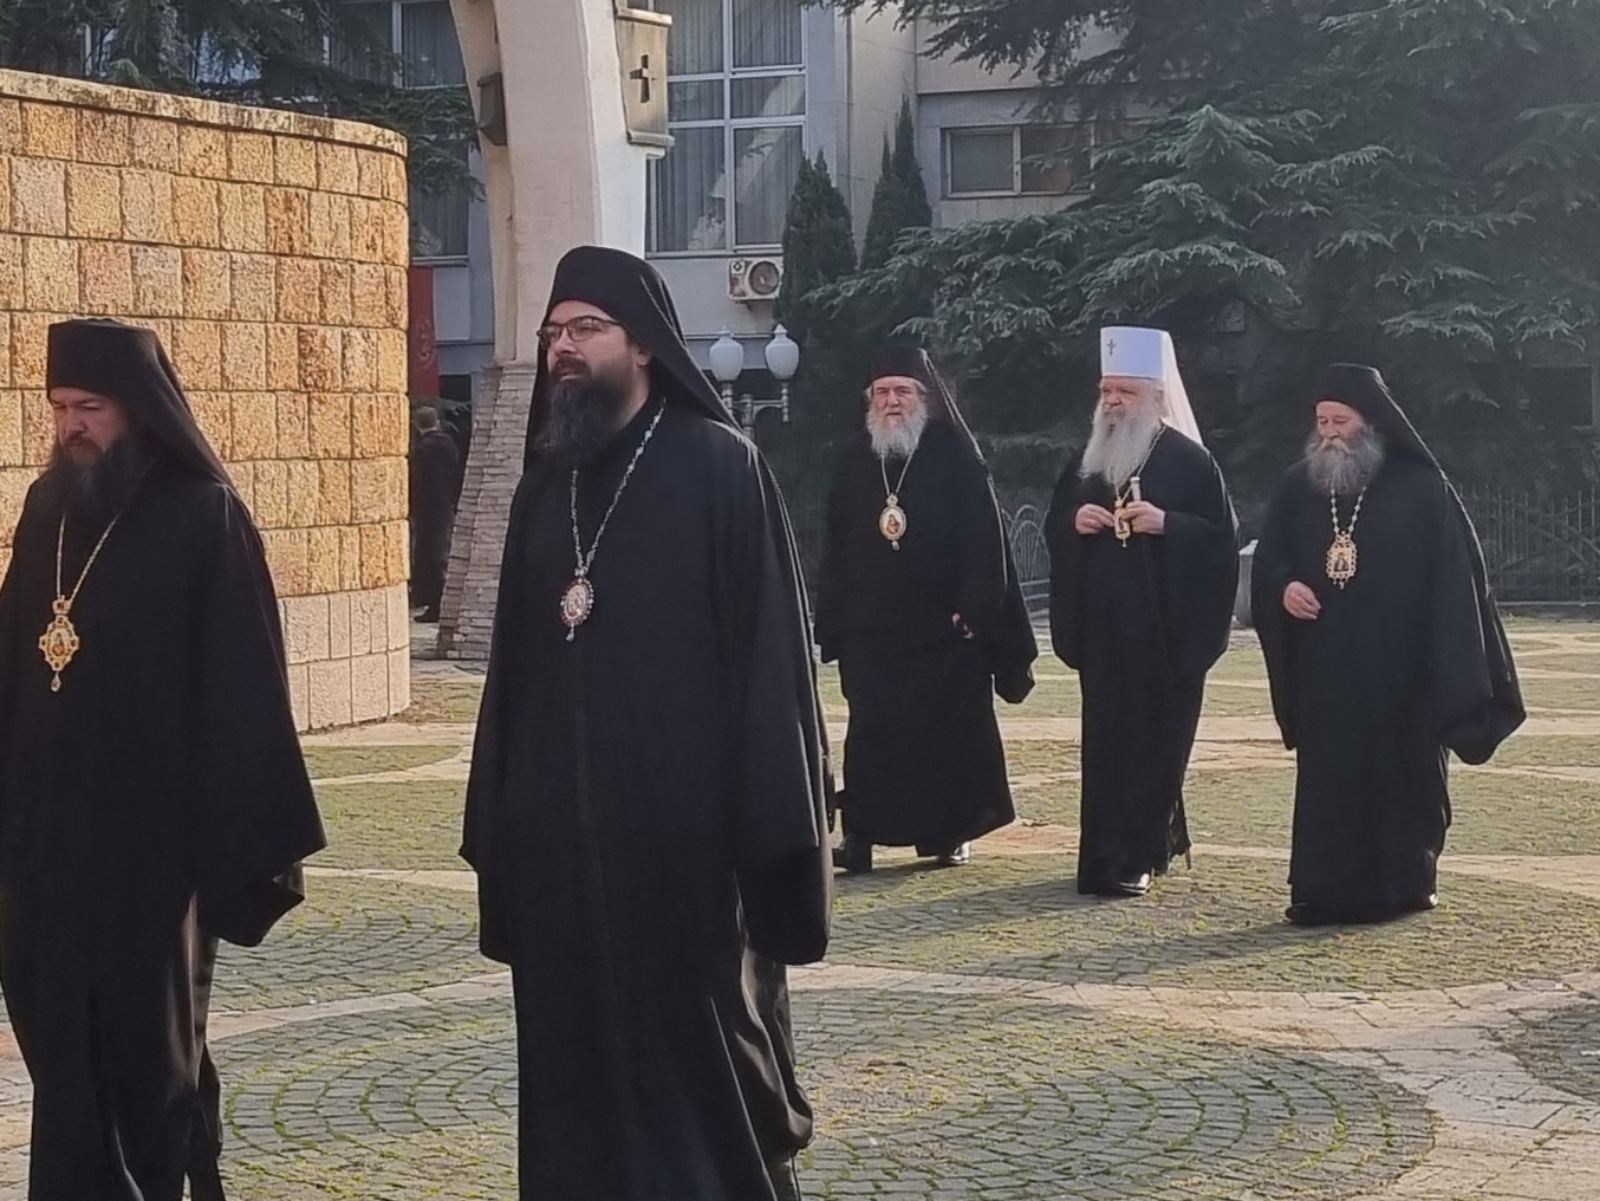  Македонската православна црква си спомнува за својот молитвен заштитник пред Бога – СВ. КЛИМЕНТ ОХРИДСКИ